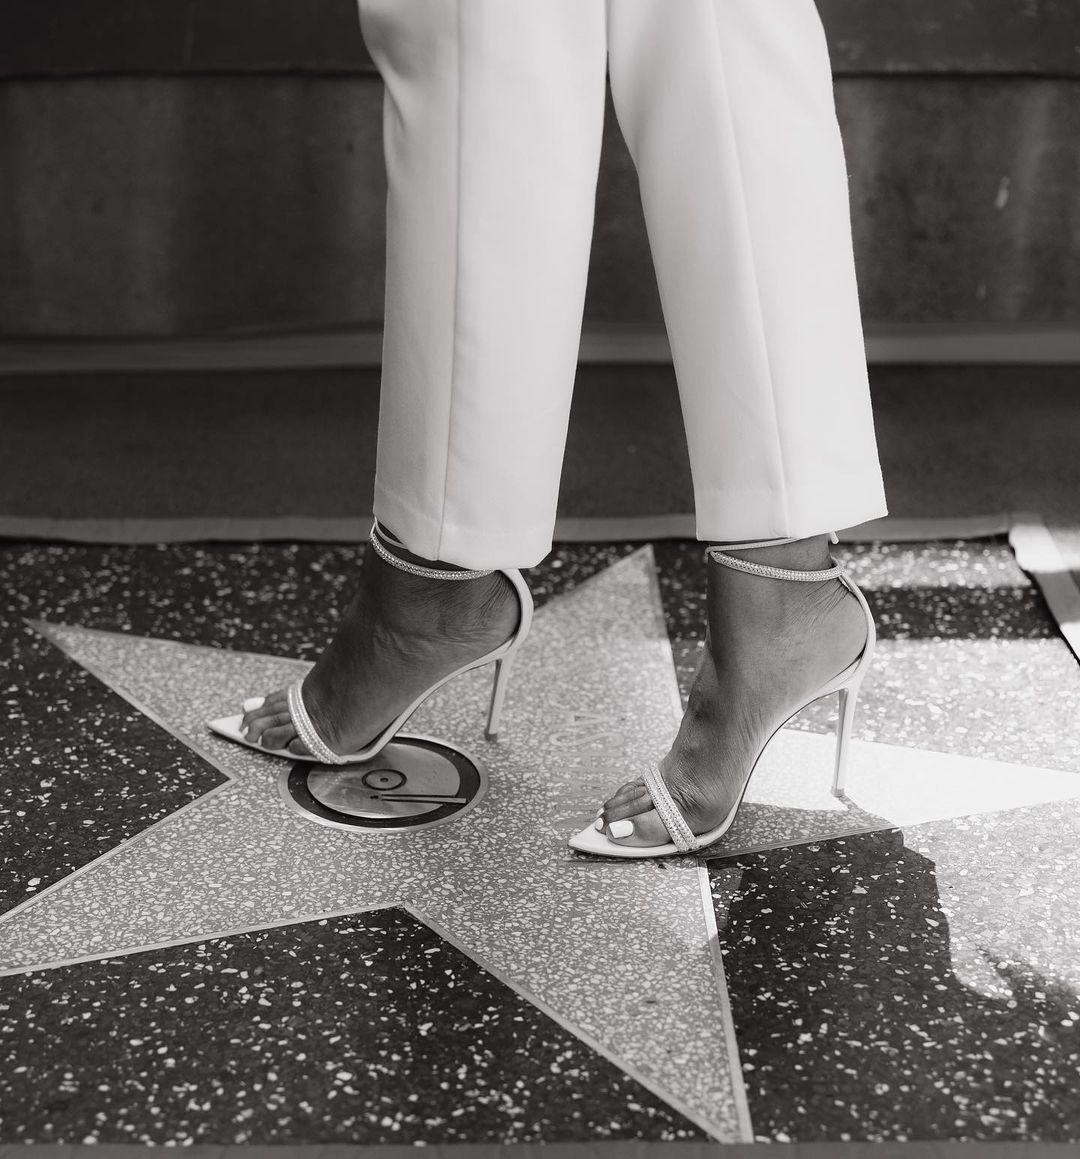 Ashanti Hollywood Walk Of Fame Award Ceremony